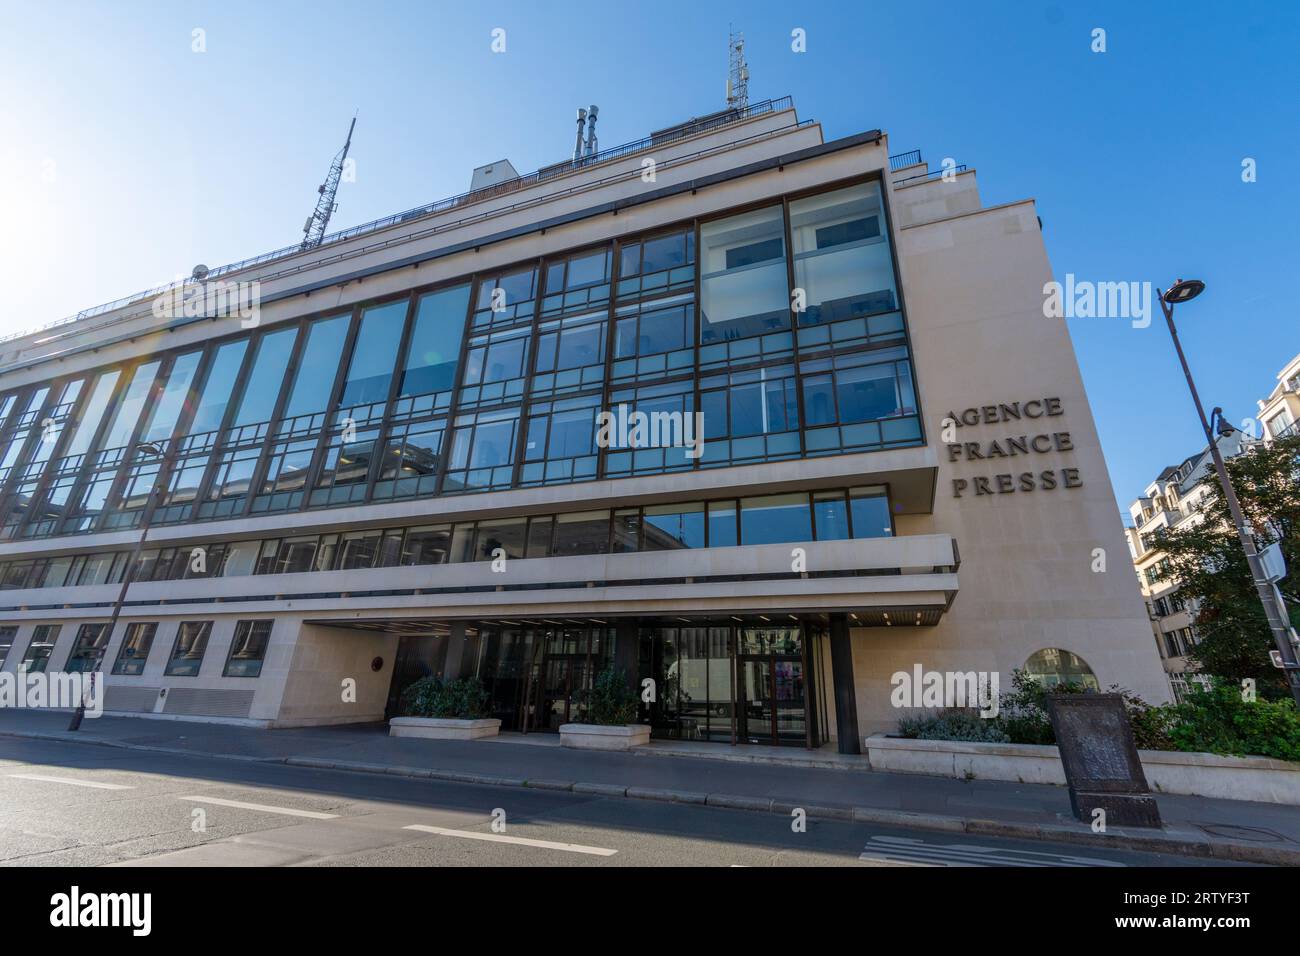 Vue extérieure du bâtiment abritant le siège de l'Agence France-presse (AFP), agence de presse française internationale générale et multimédia Banque D'Images